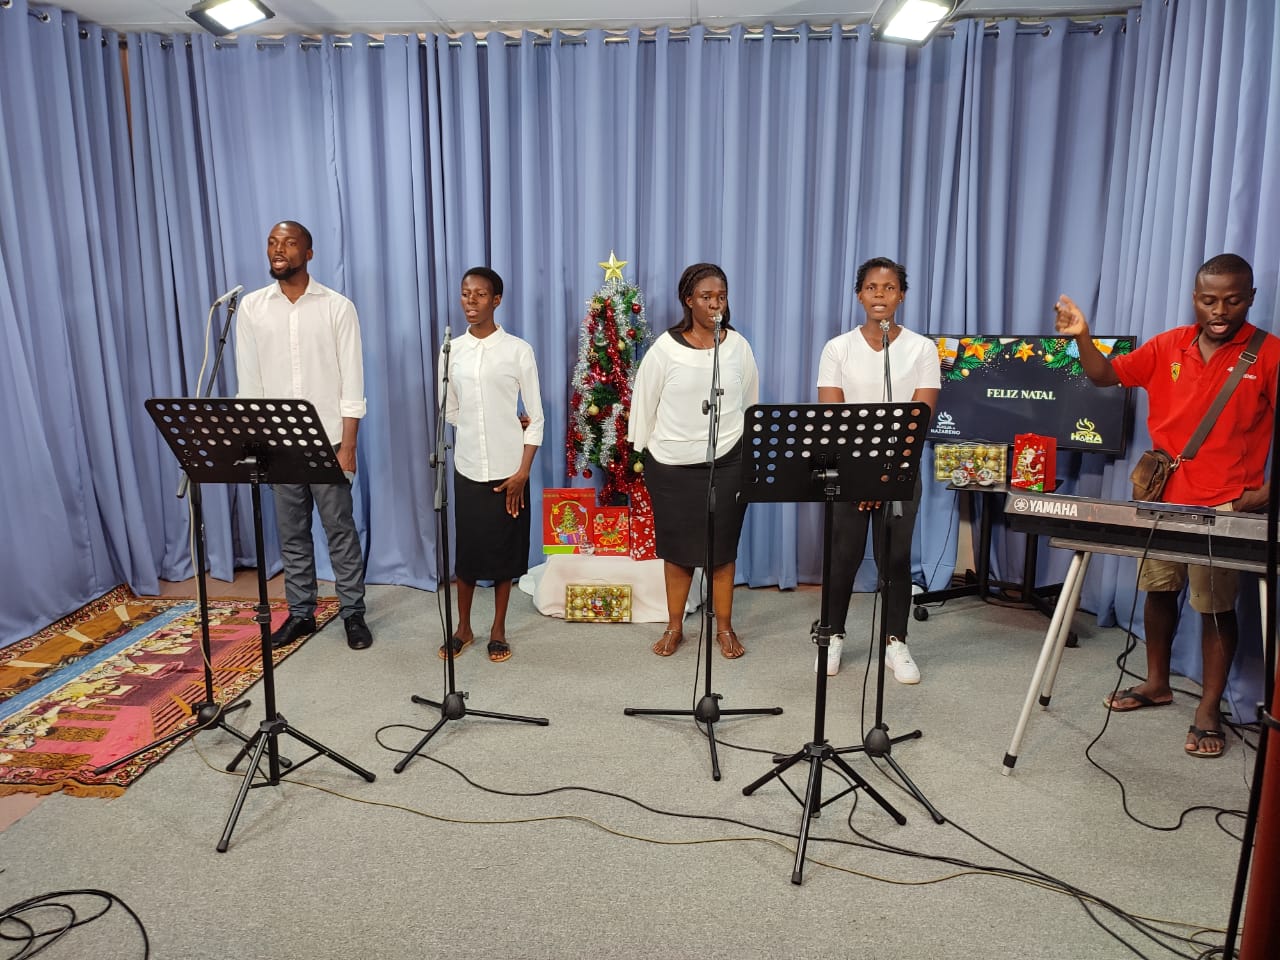 Igreja em Moçambique dá mostras de criatividade e reinvenção após a Covid